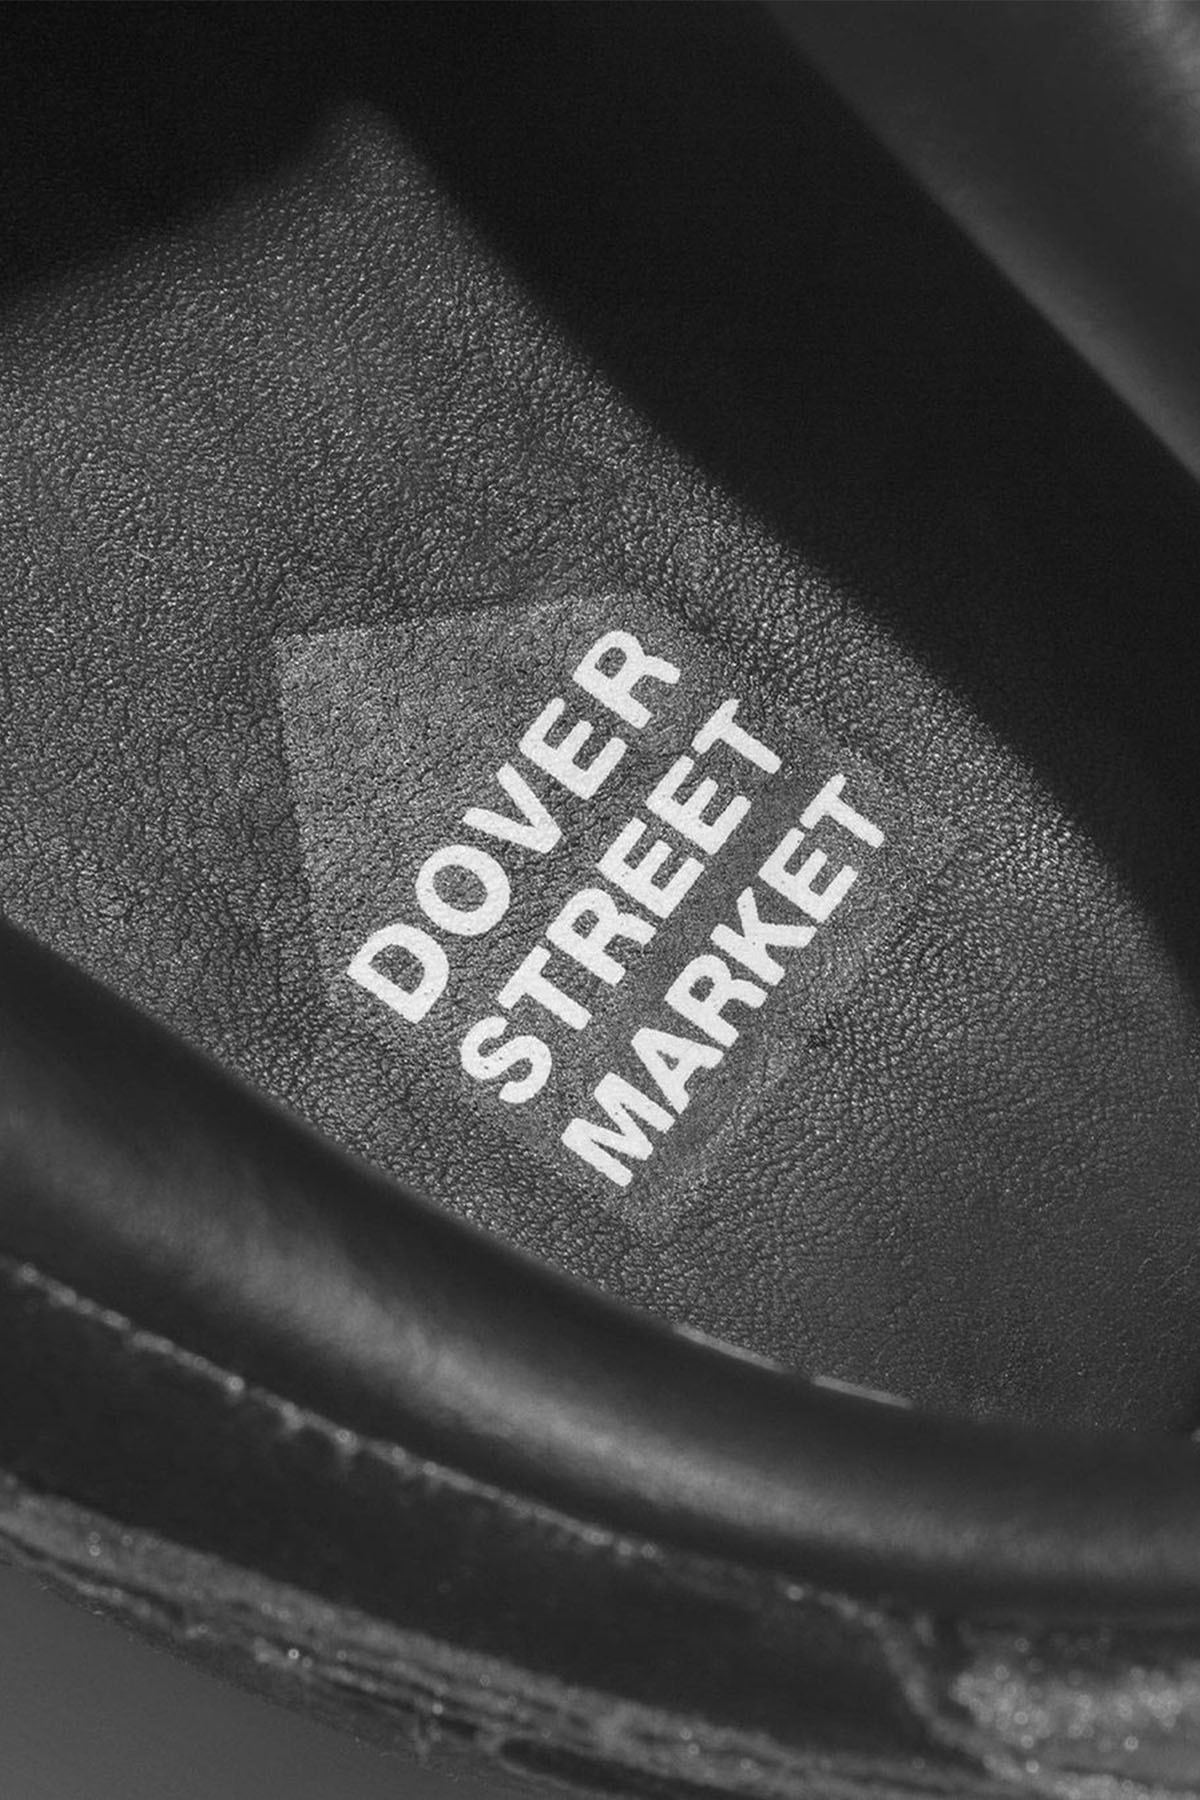 Dover Street Market x Nike Dunk Low Velvet 最新聯乘鞋款發售資訊正式公開